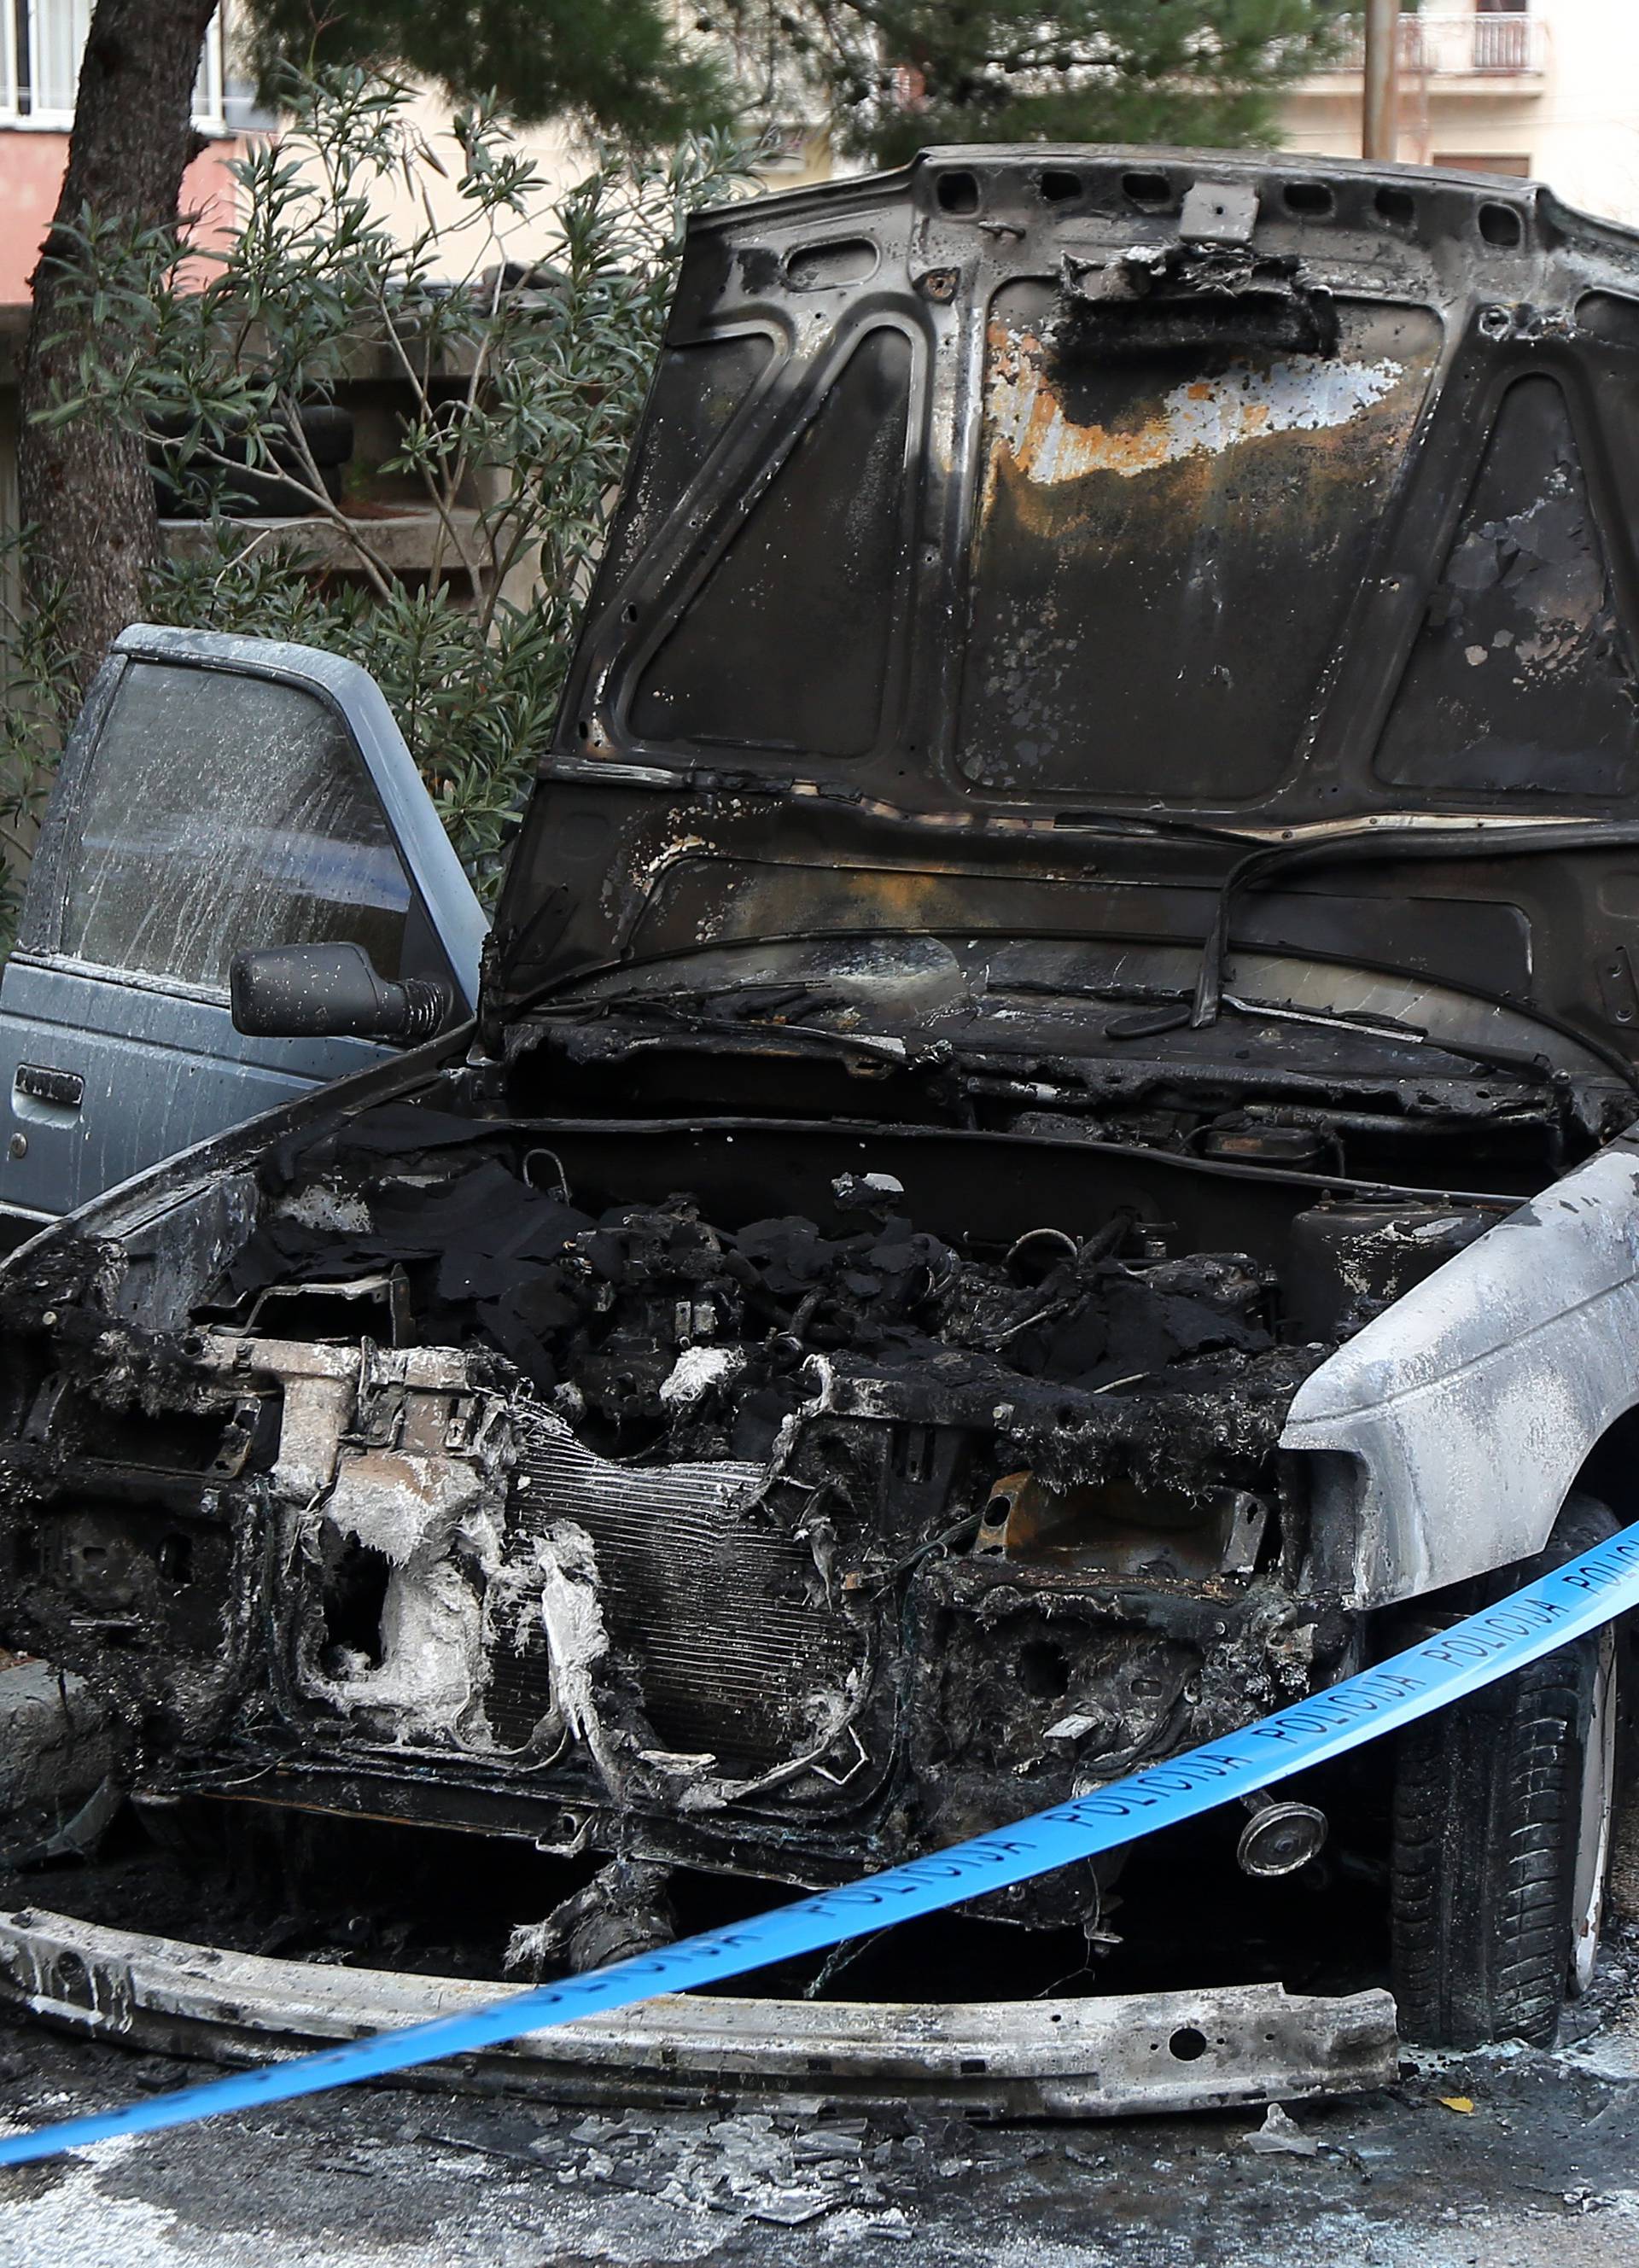 U Šibeniku izgorio auto: Očevid će pokazati što je uzrok požara